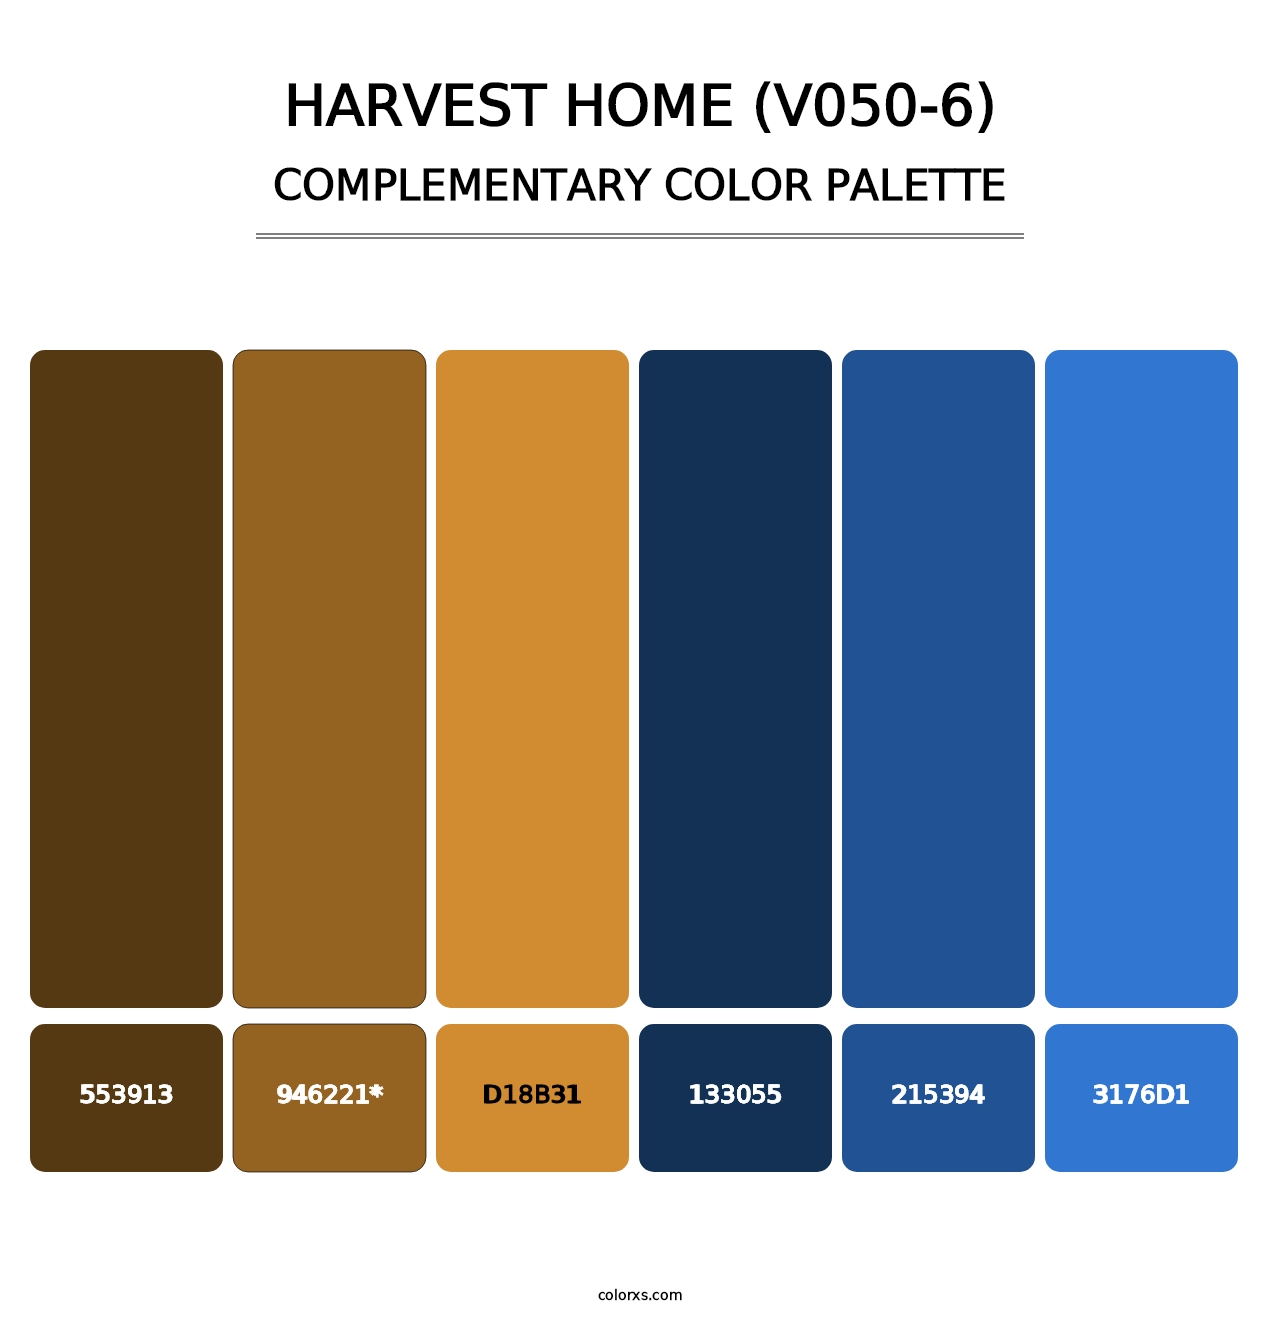 Harvest Home (V050-6) - Complementary Color Palette